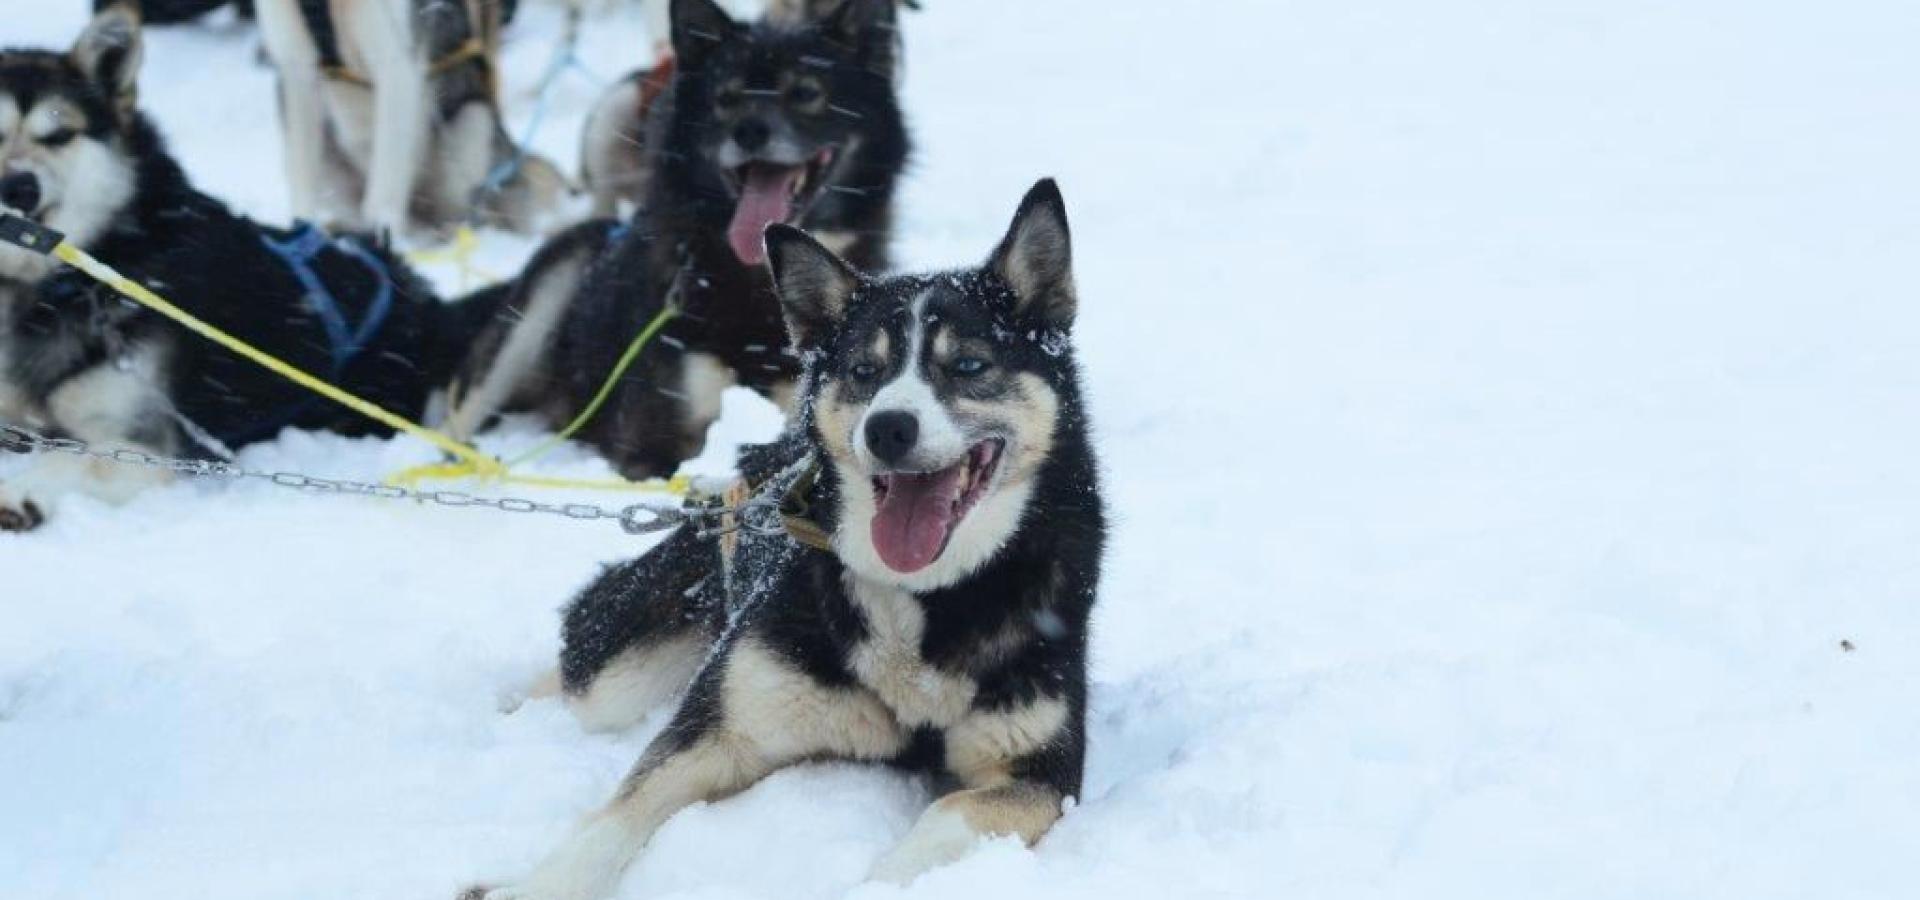 Hundekjøring i arktisk natur med lunsj først - Activenorth